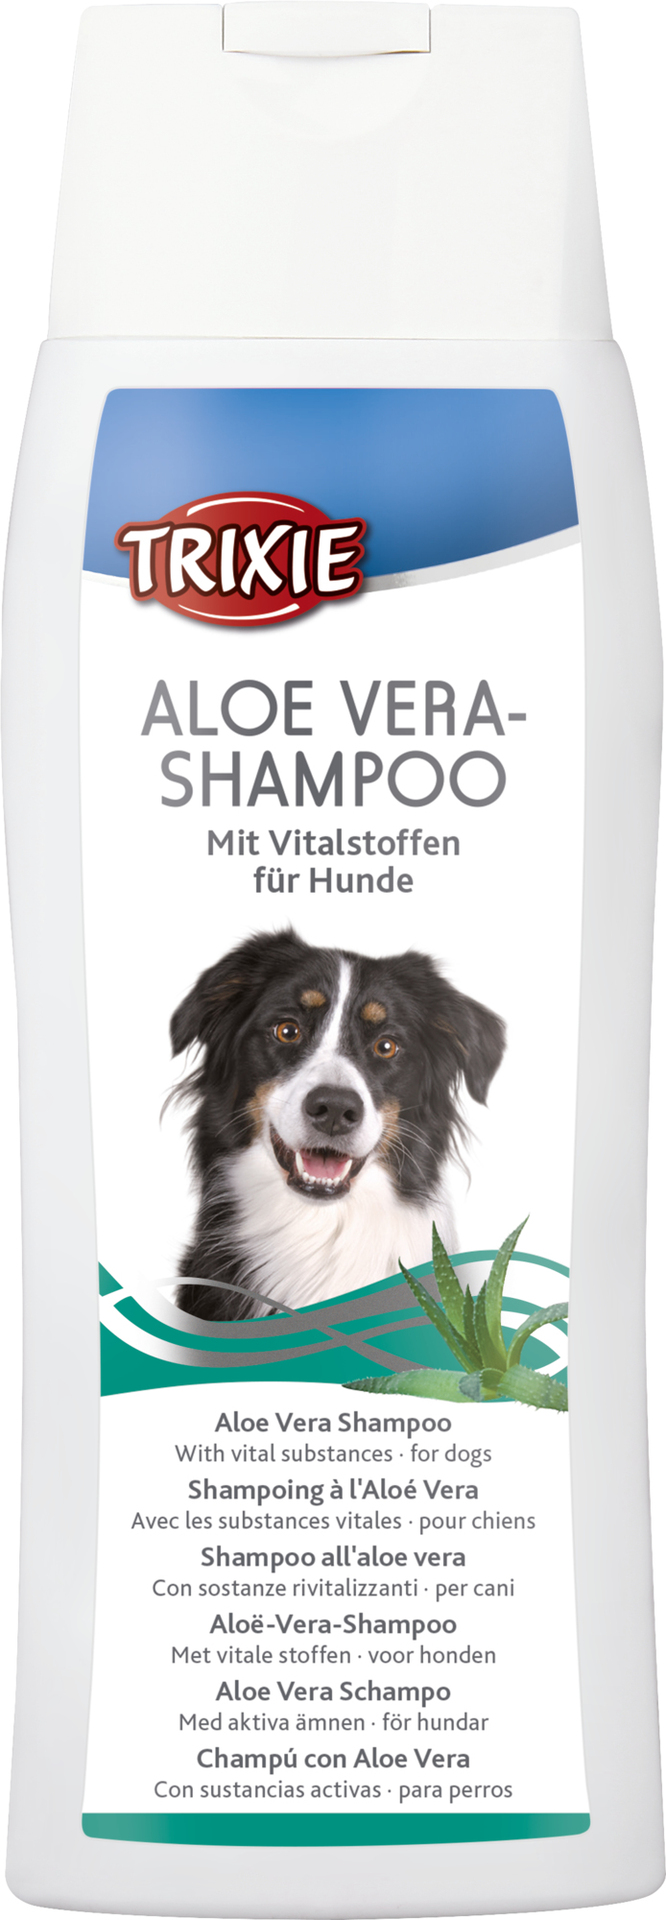 Aloe Vera-Shampoo